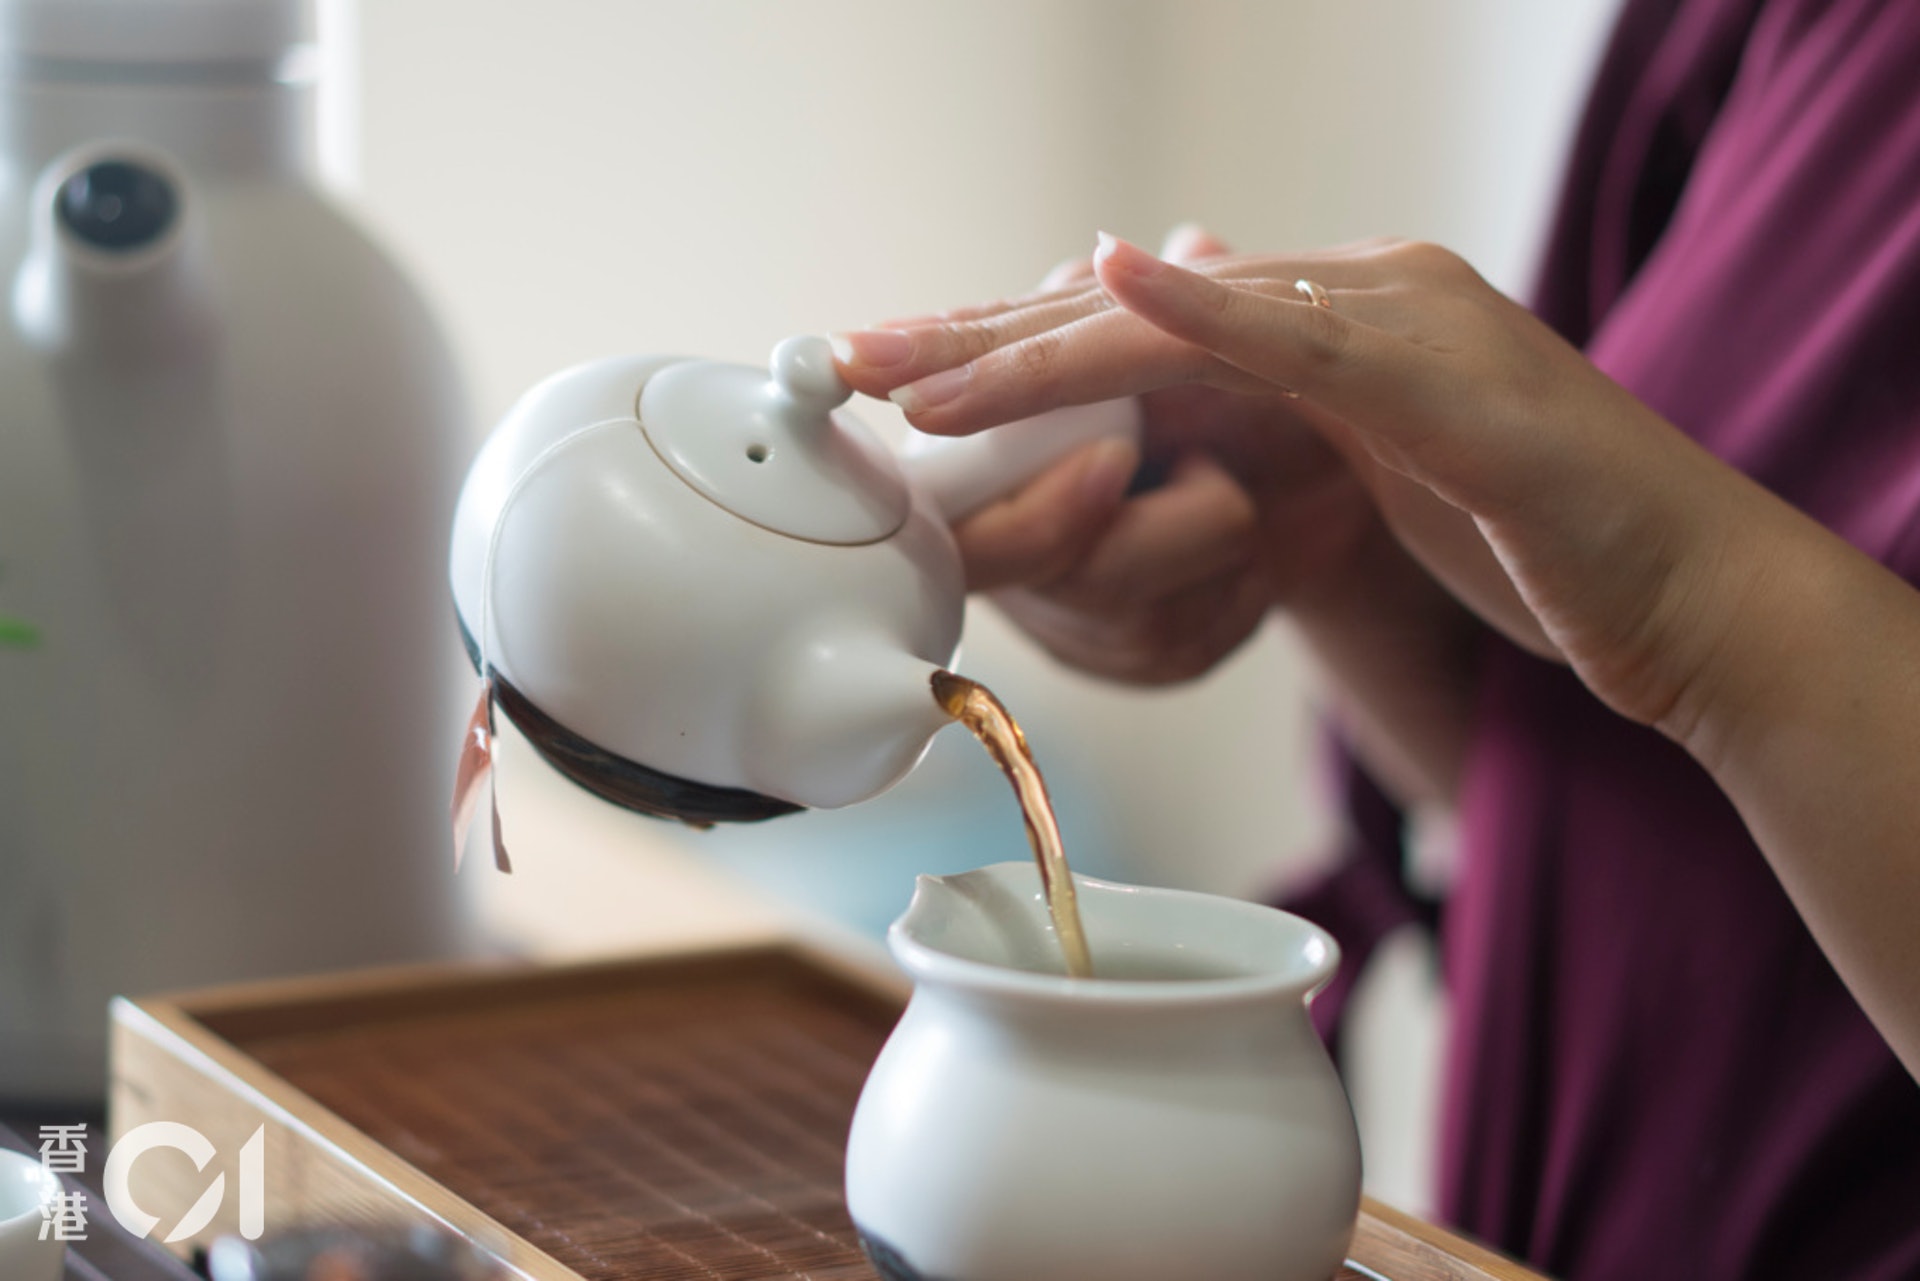 御茗︳色︰色淺，味淡，茶包設計影響茶色及茶味。